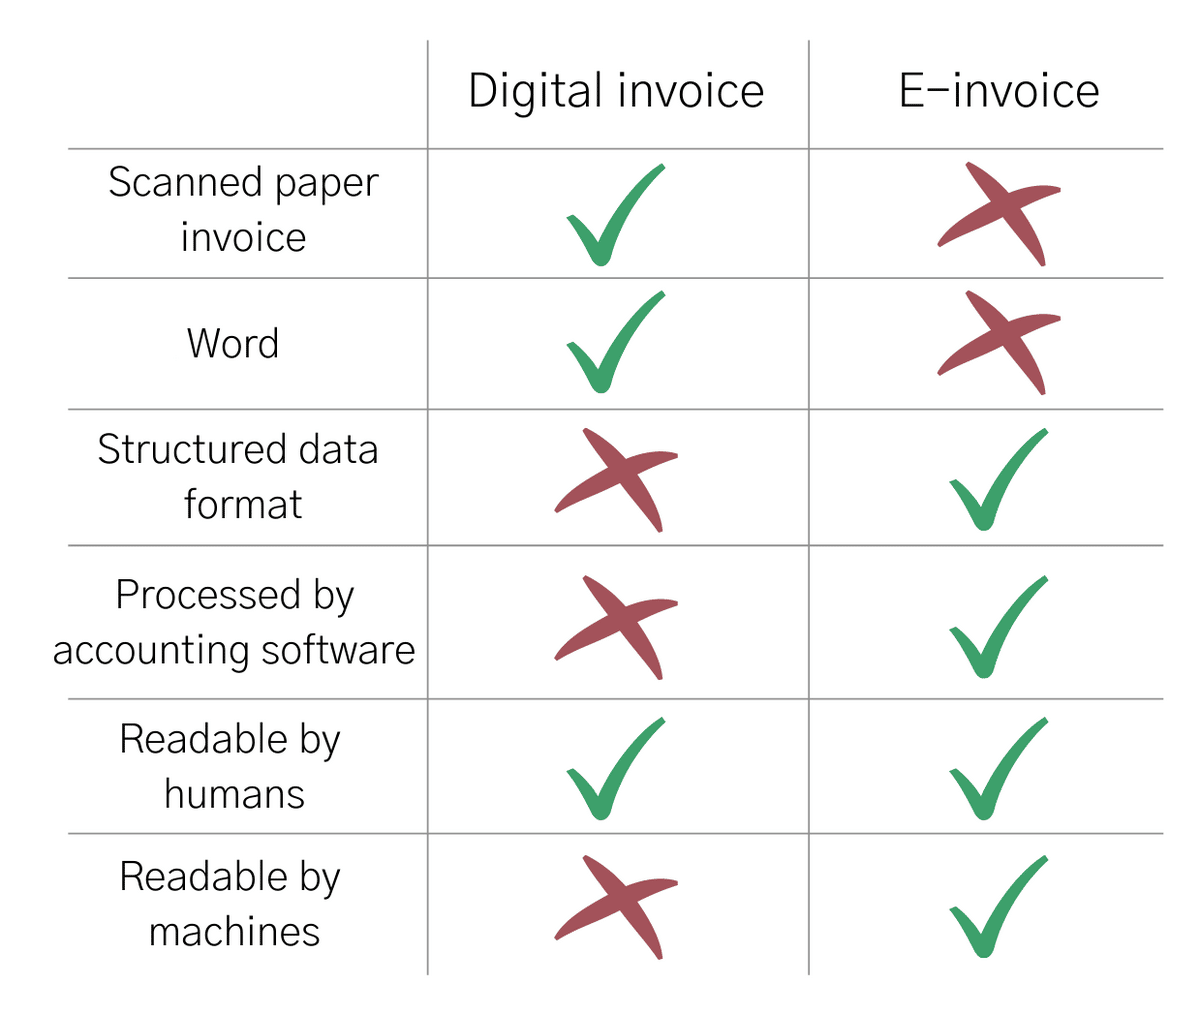 Digital invoice vs e-invoice checklist infographic